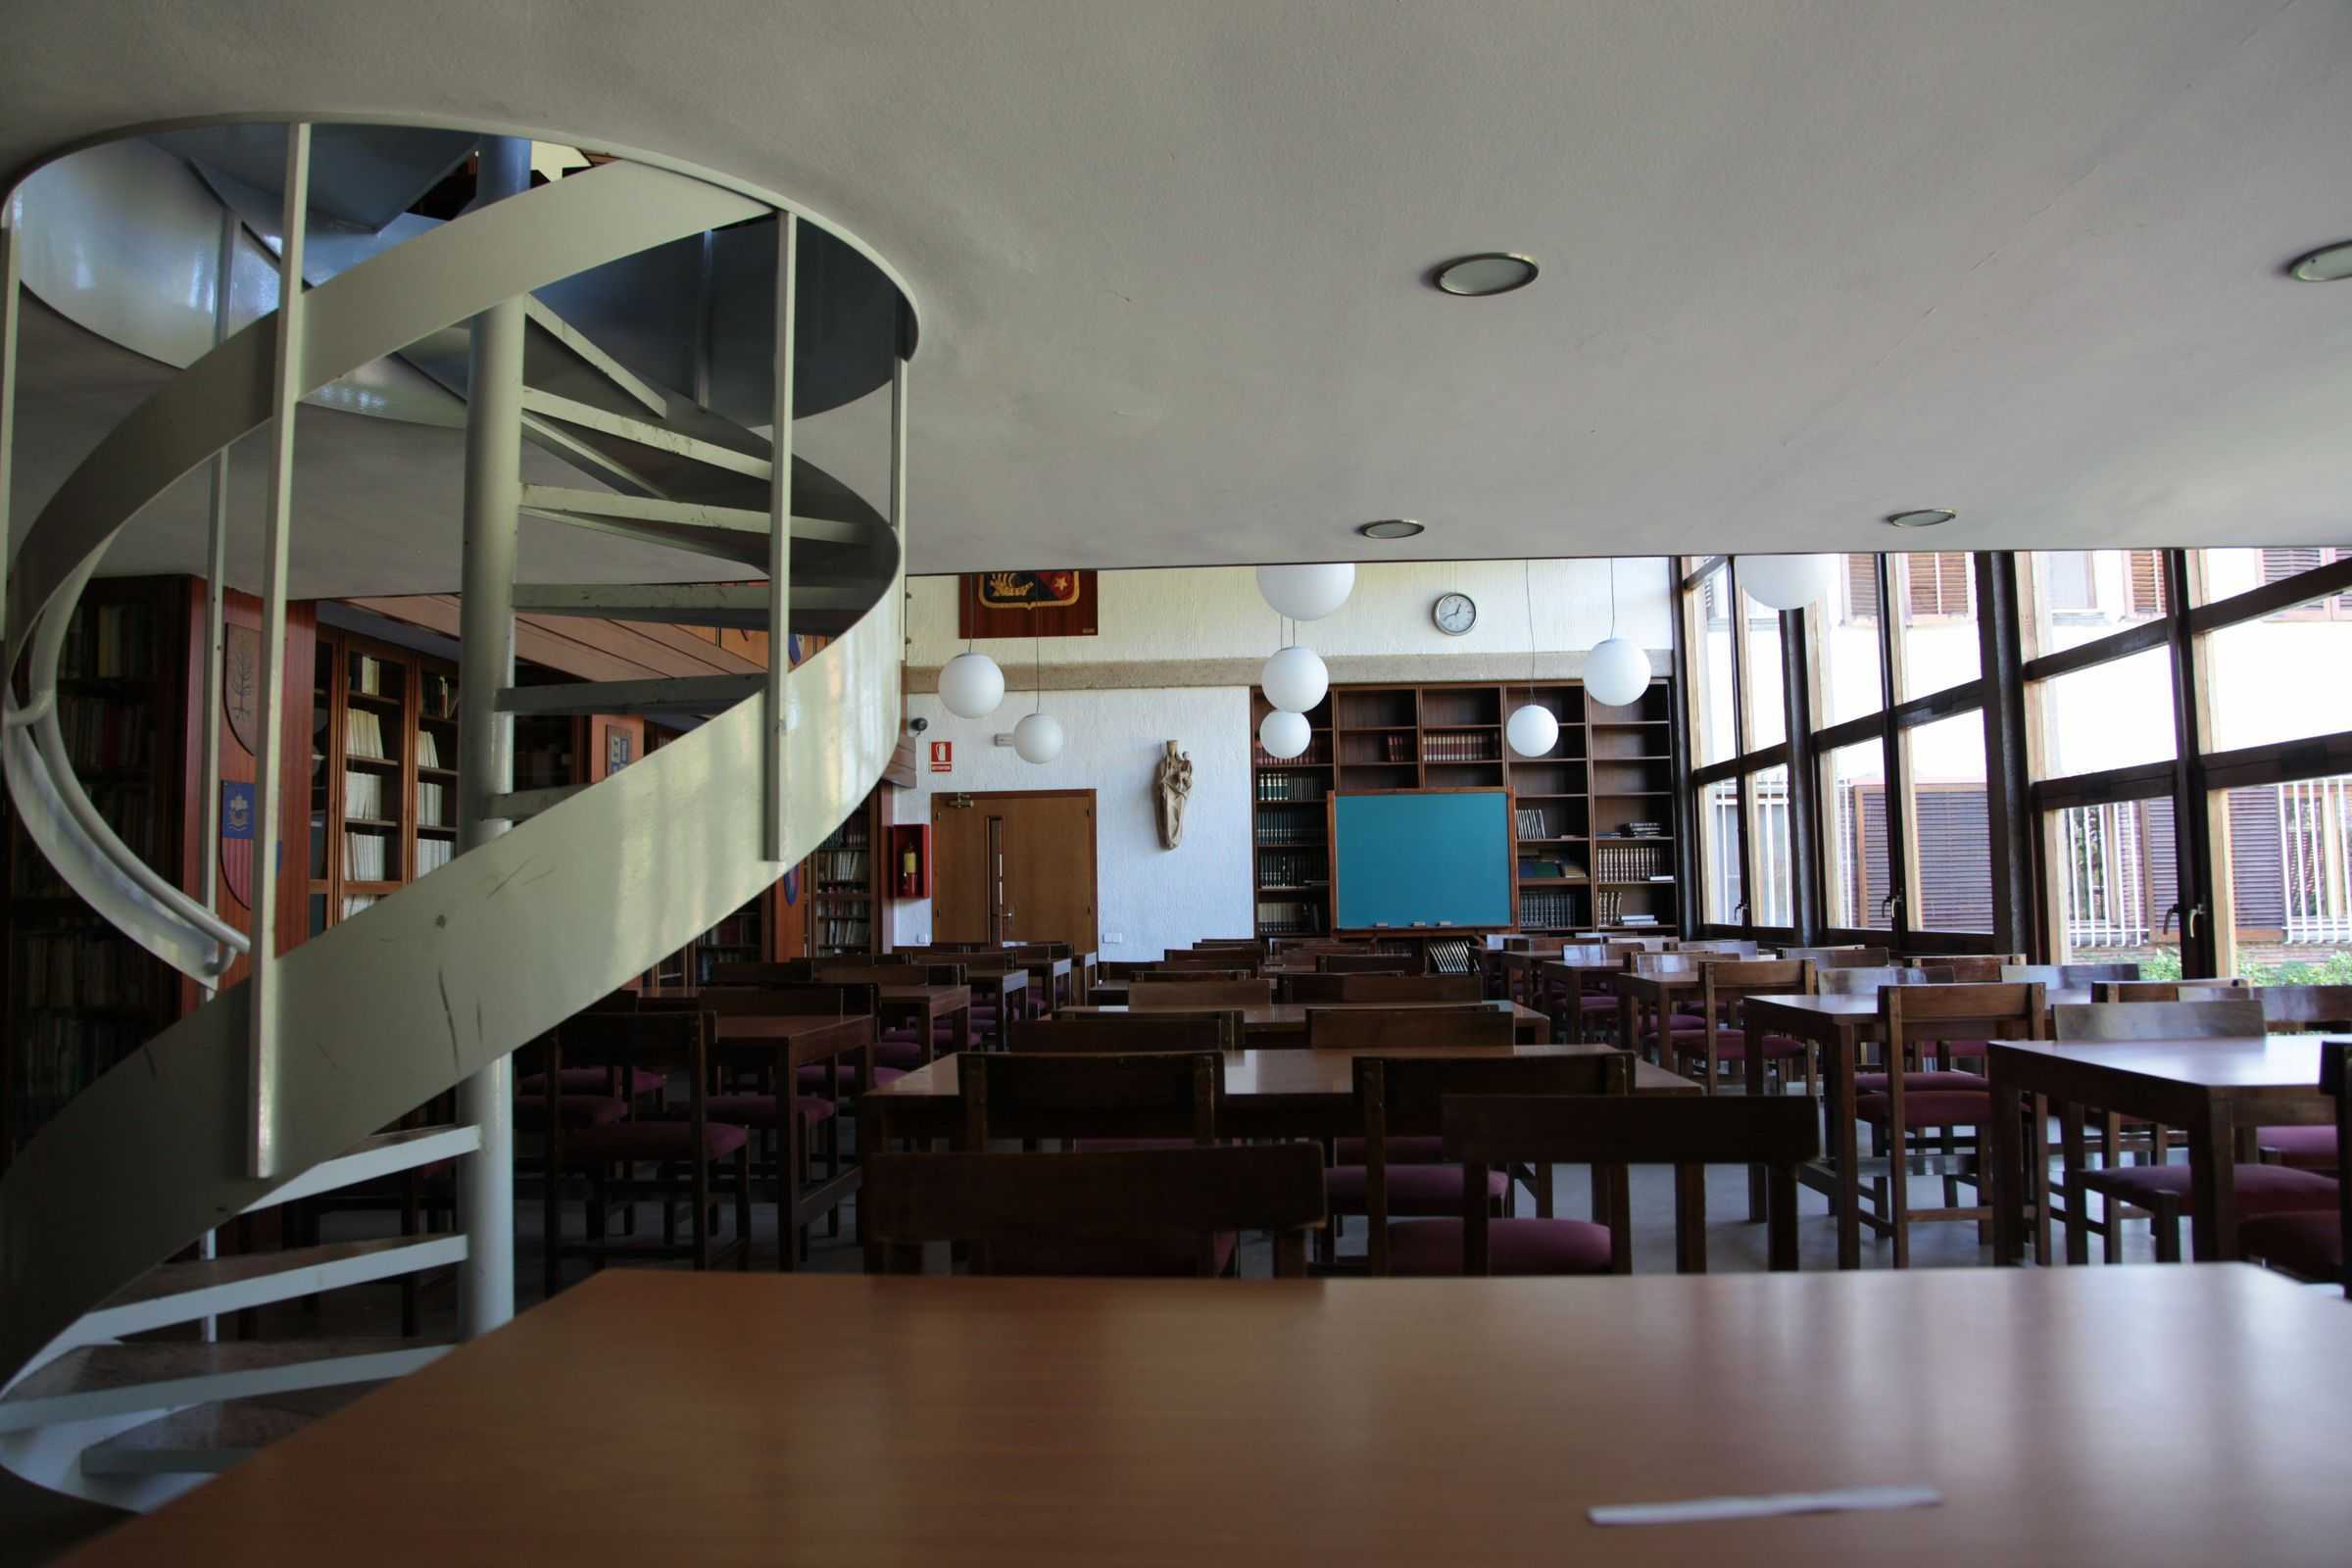 Una escuela de Sant Cugat estudia sanciones a tres alumnos por insultos racistas